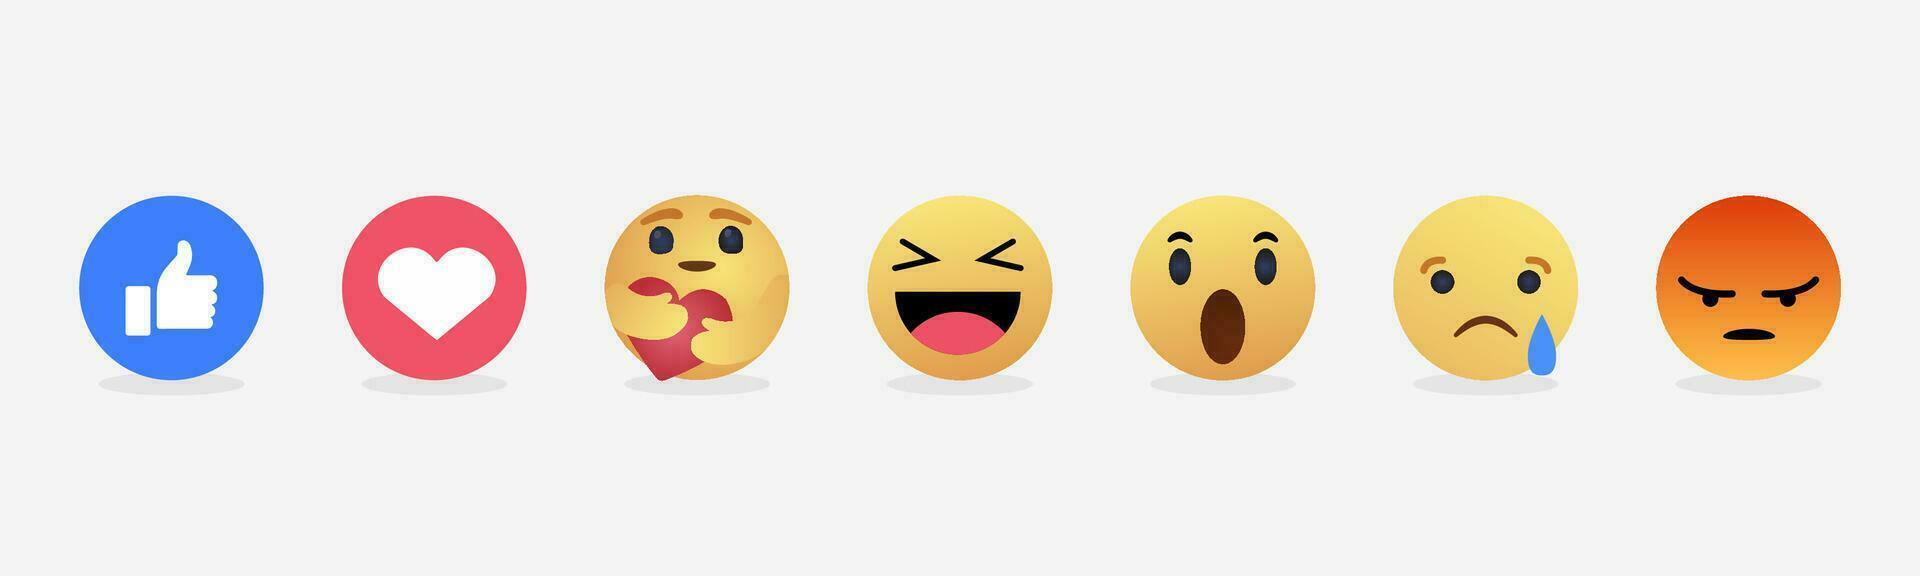 sociale media reazioni emoji, pollice su piace, amore cuore, abbraccio emoji, haha ridendo, sorpreso emoji, triste pianto, arrabbiato, 3d vettore emoticon.